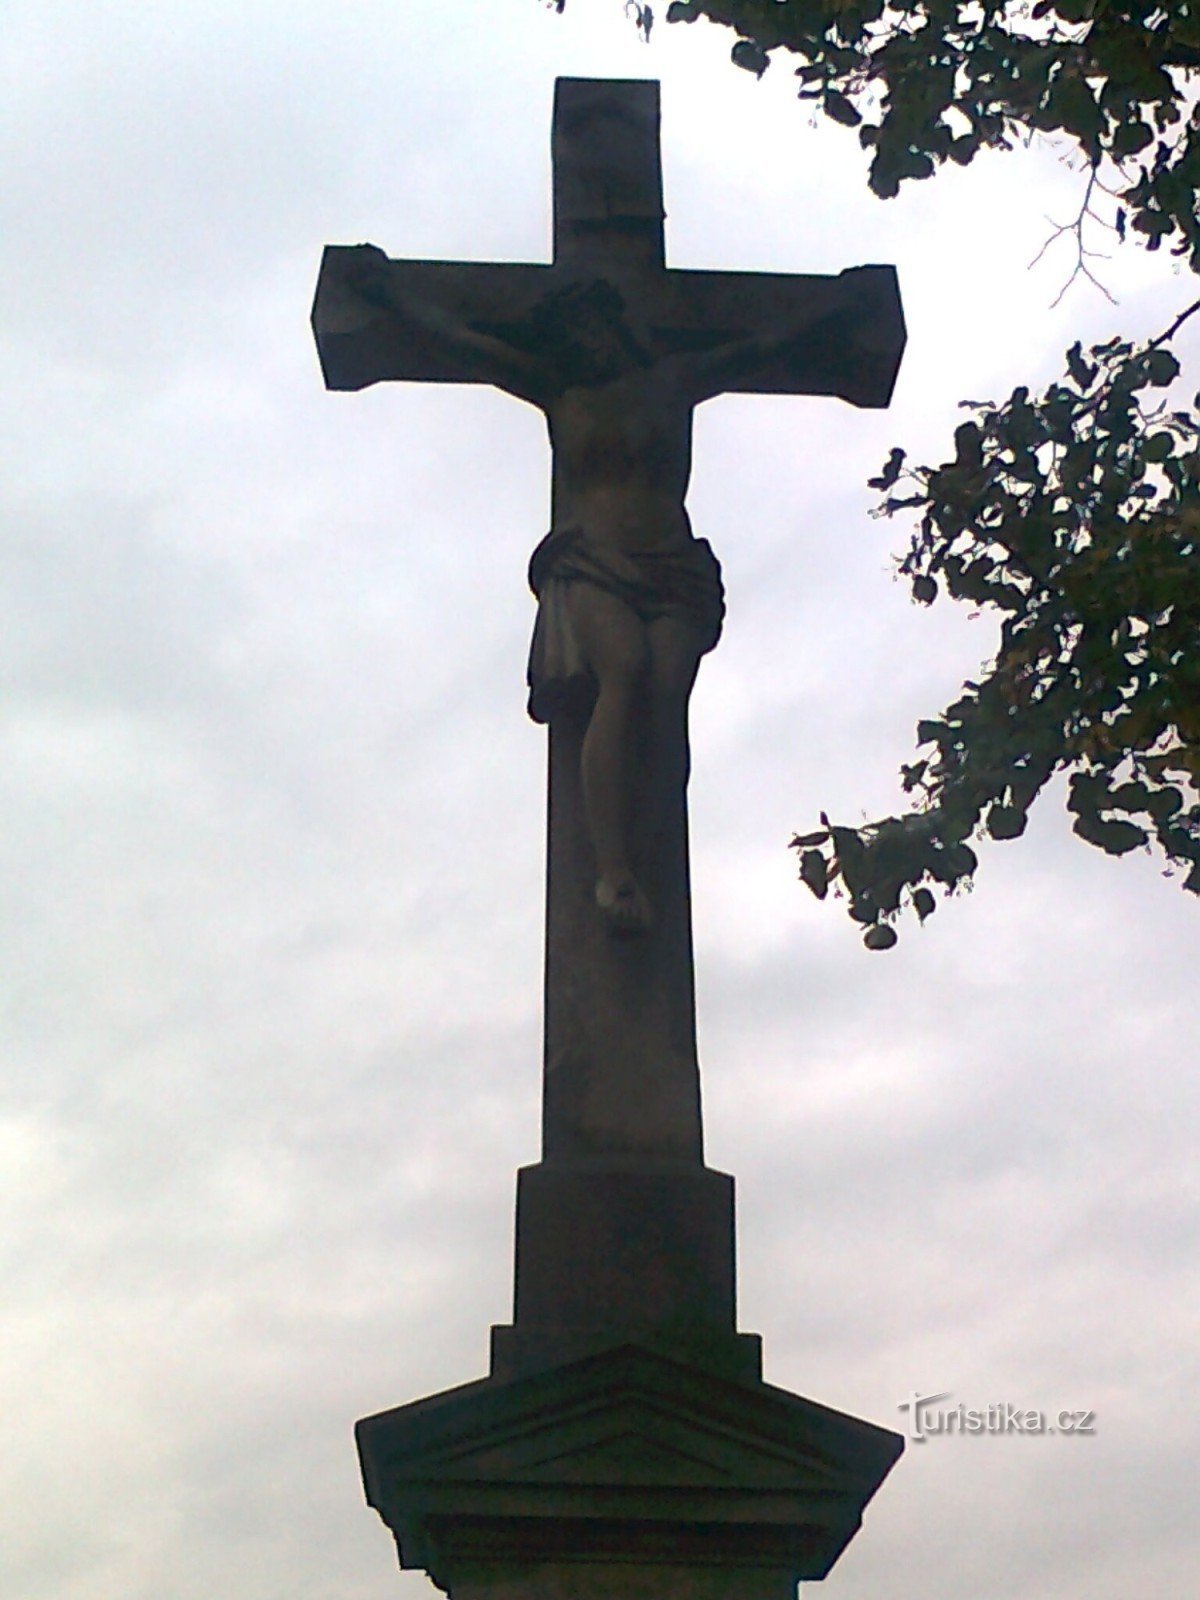 Úsov - cruz de pedra pela estrada Úsov - Stavenice